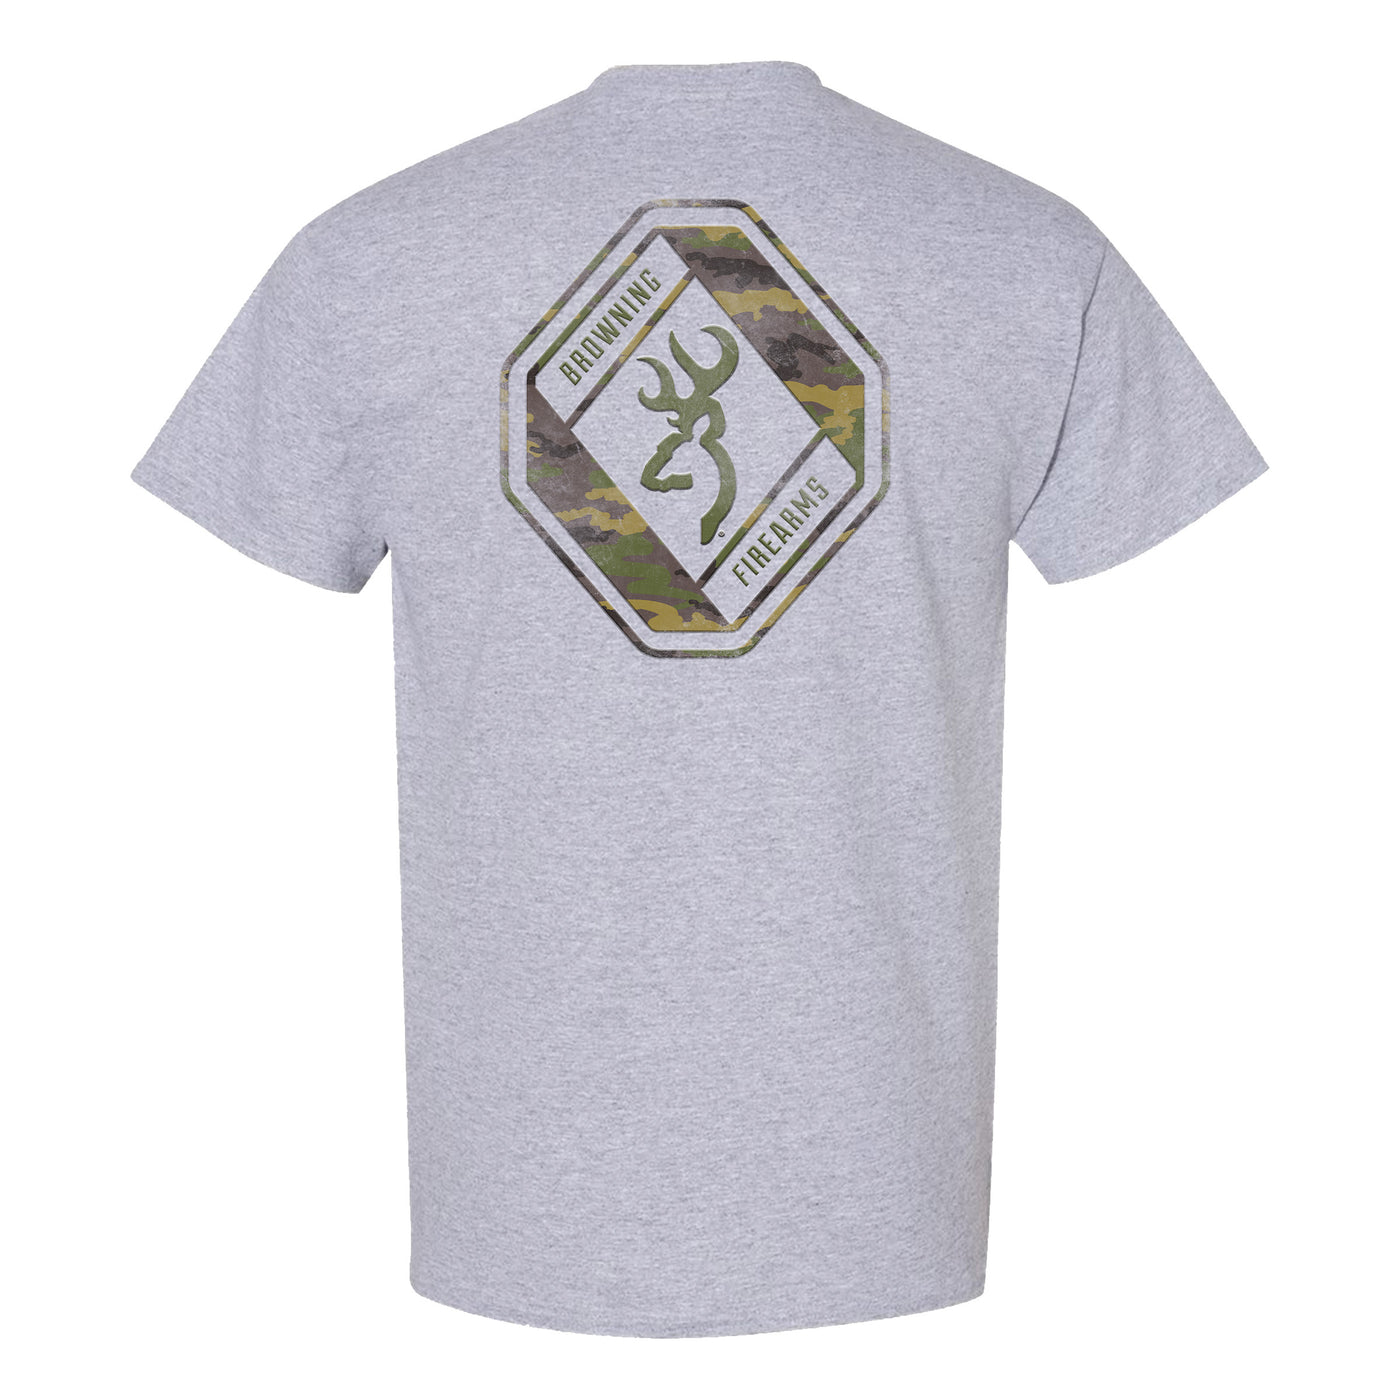 Browning “Diamond” short-sleeved t-shirt for men